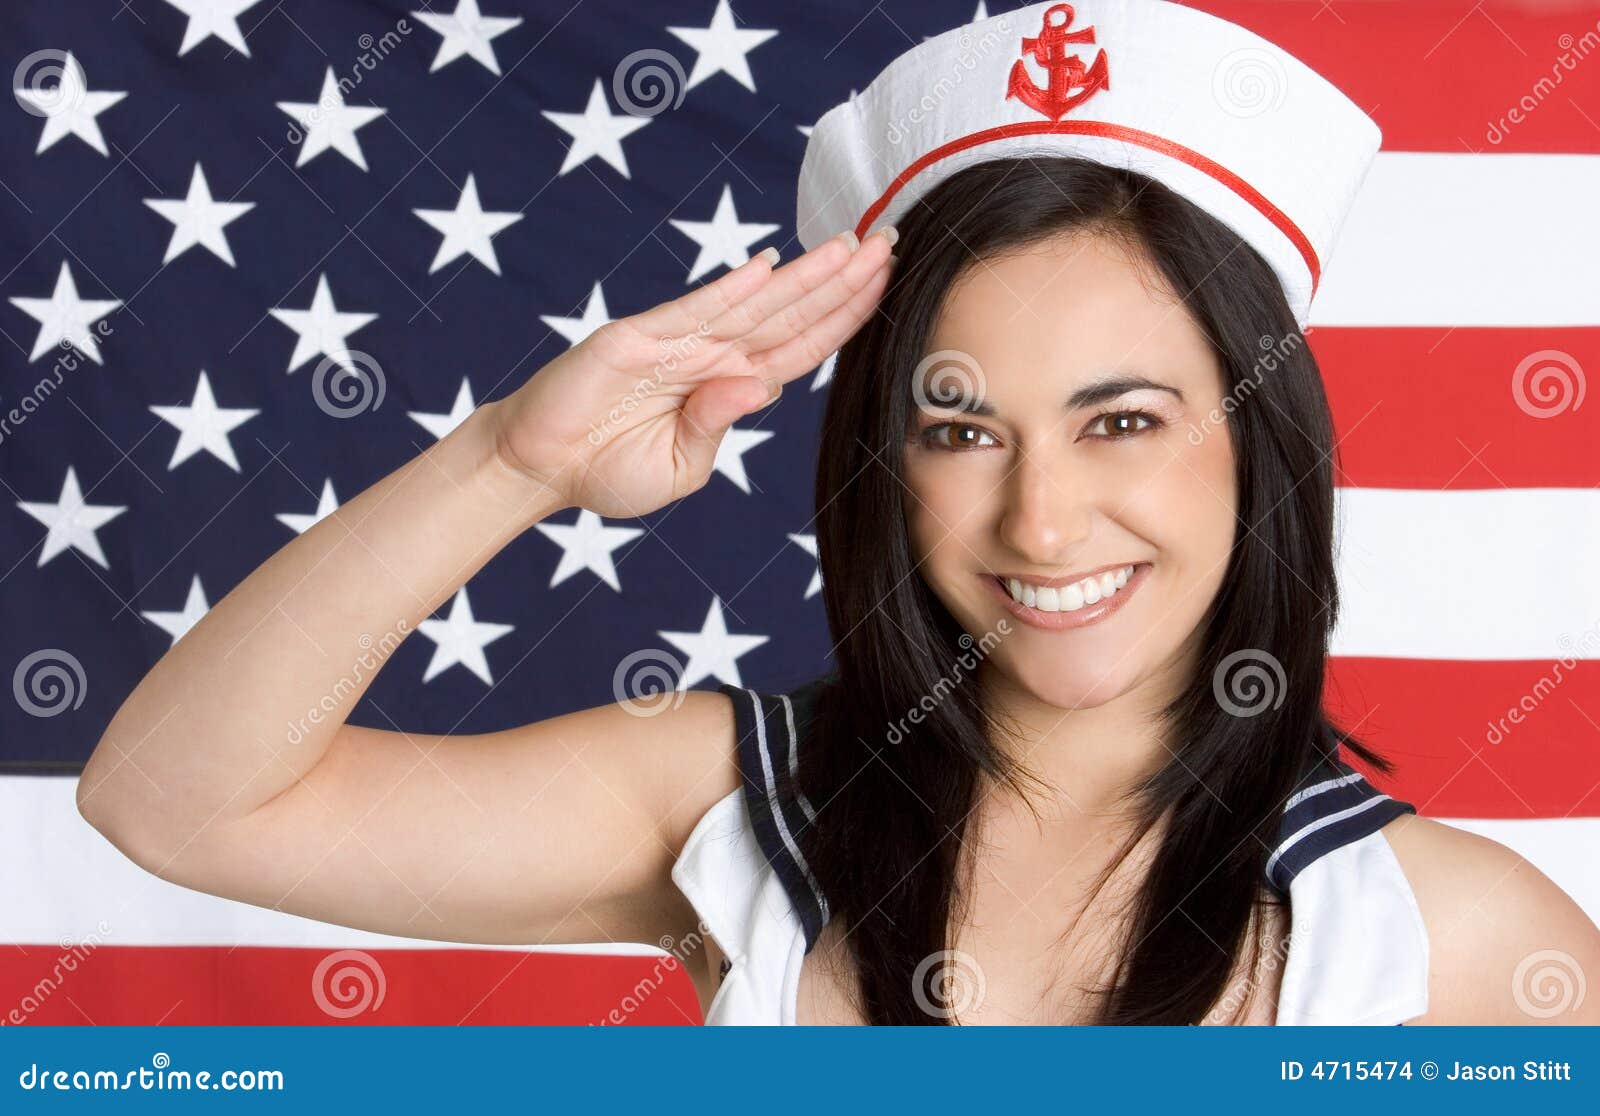 navy-girl-salute-4715474.jpg